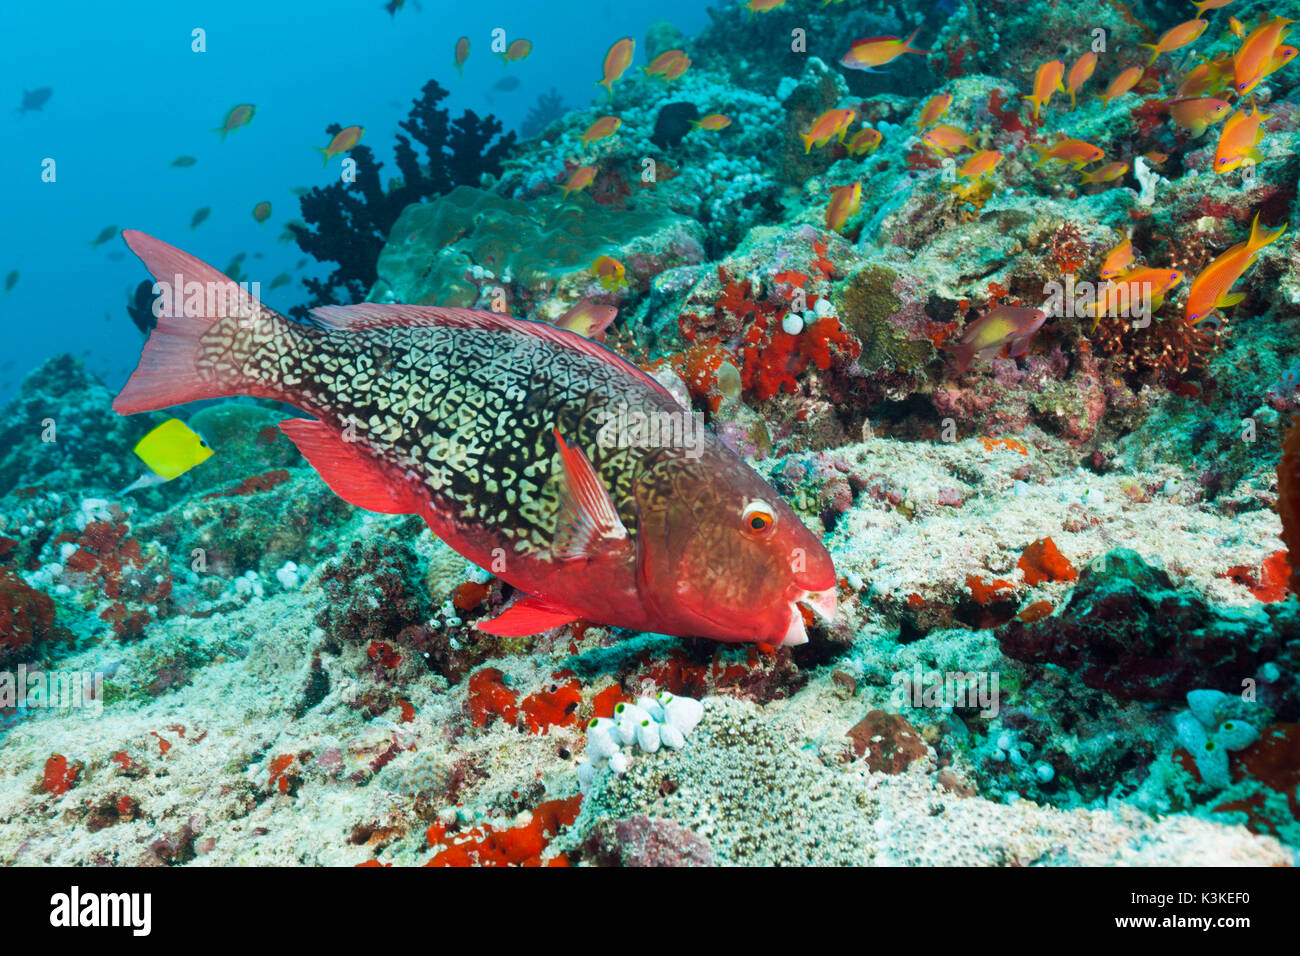 Redlip Parrotfish, Scarus rubroviolaceus, North Male Atoll, Maldives Stock Photo